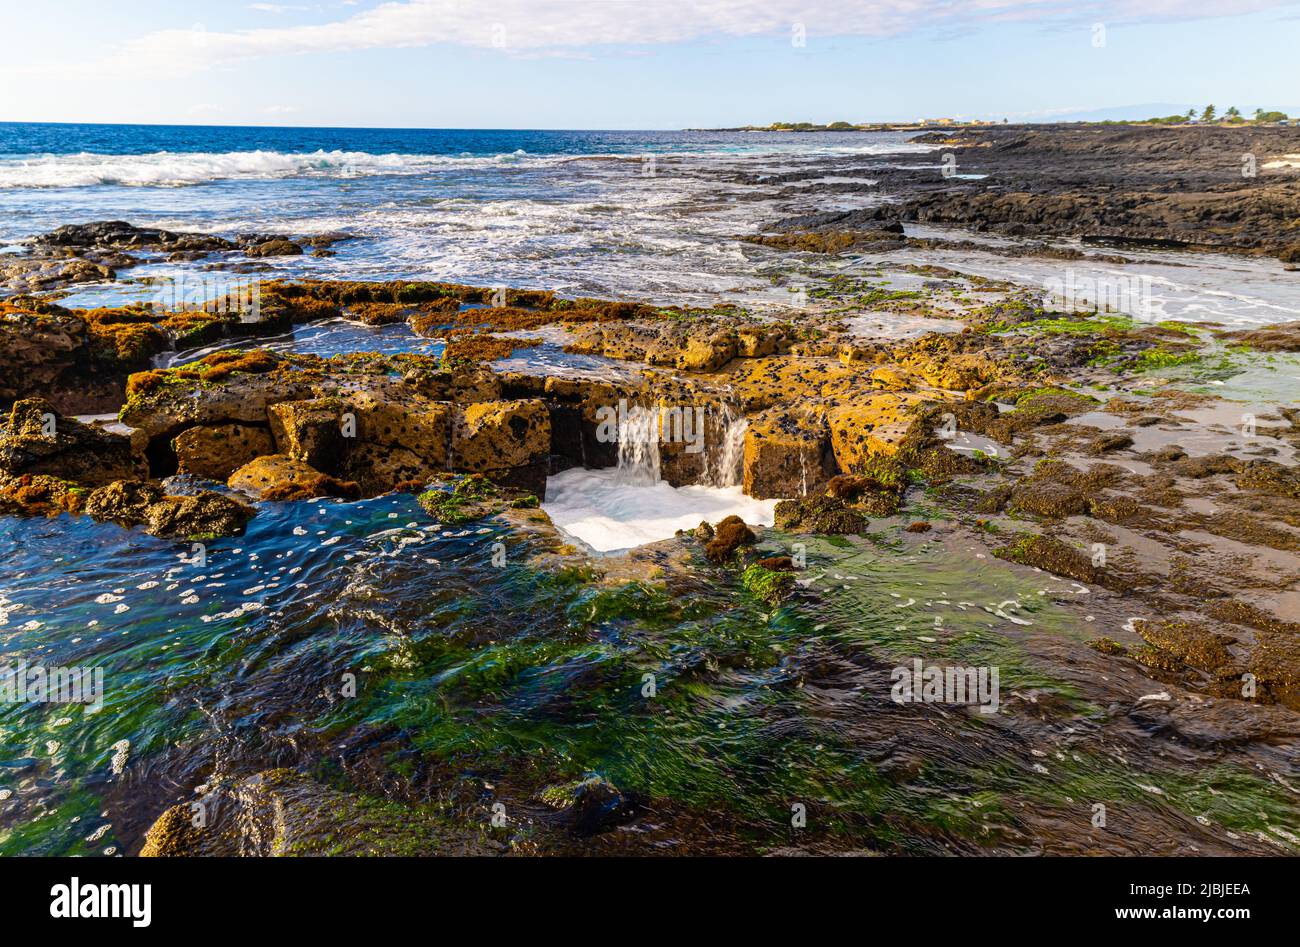 Pele's Well on The Kona Coast, Hawaii Island, Hawaii, USA Stock Photo